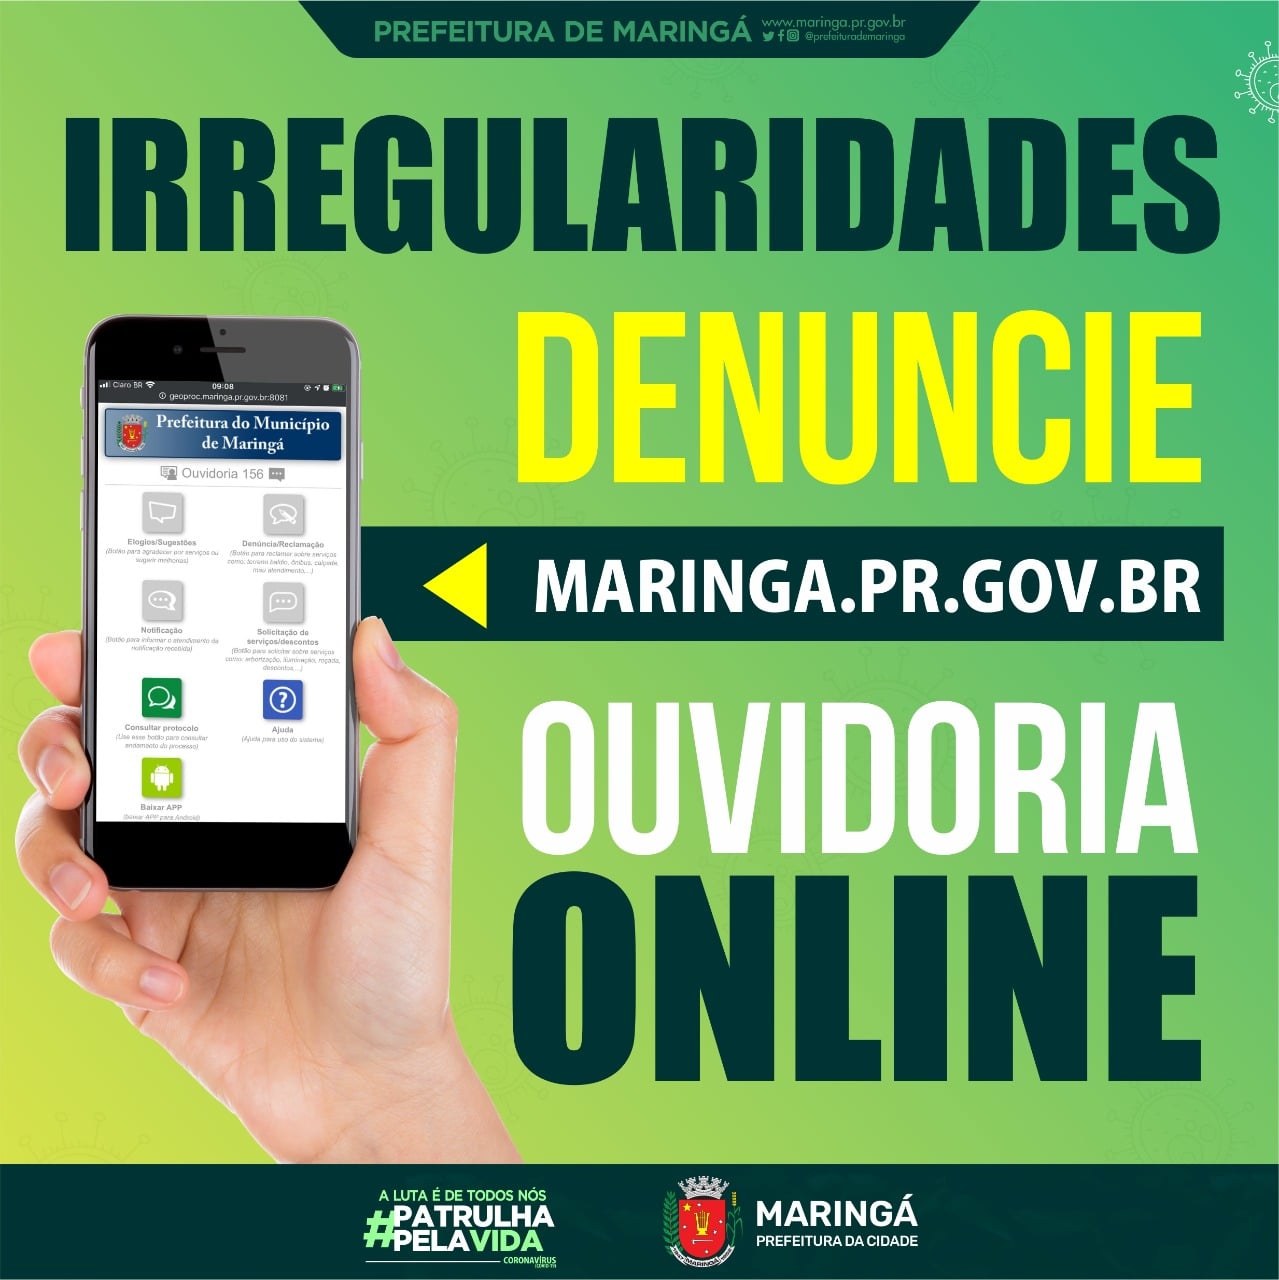 Faça sua denúncia na OUVIDORIA ONLINE de Maringá